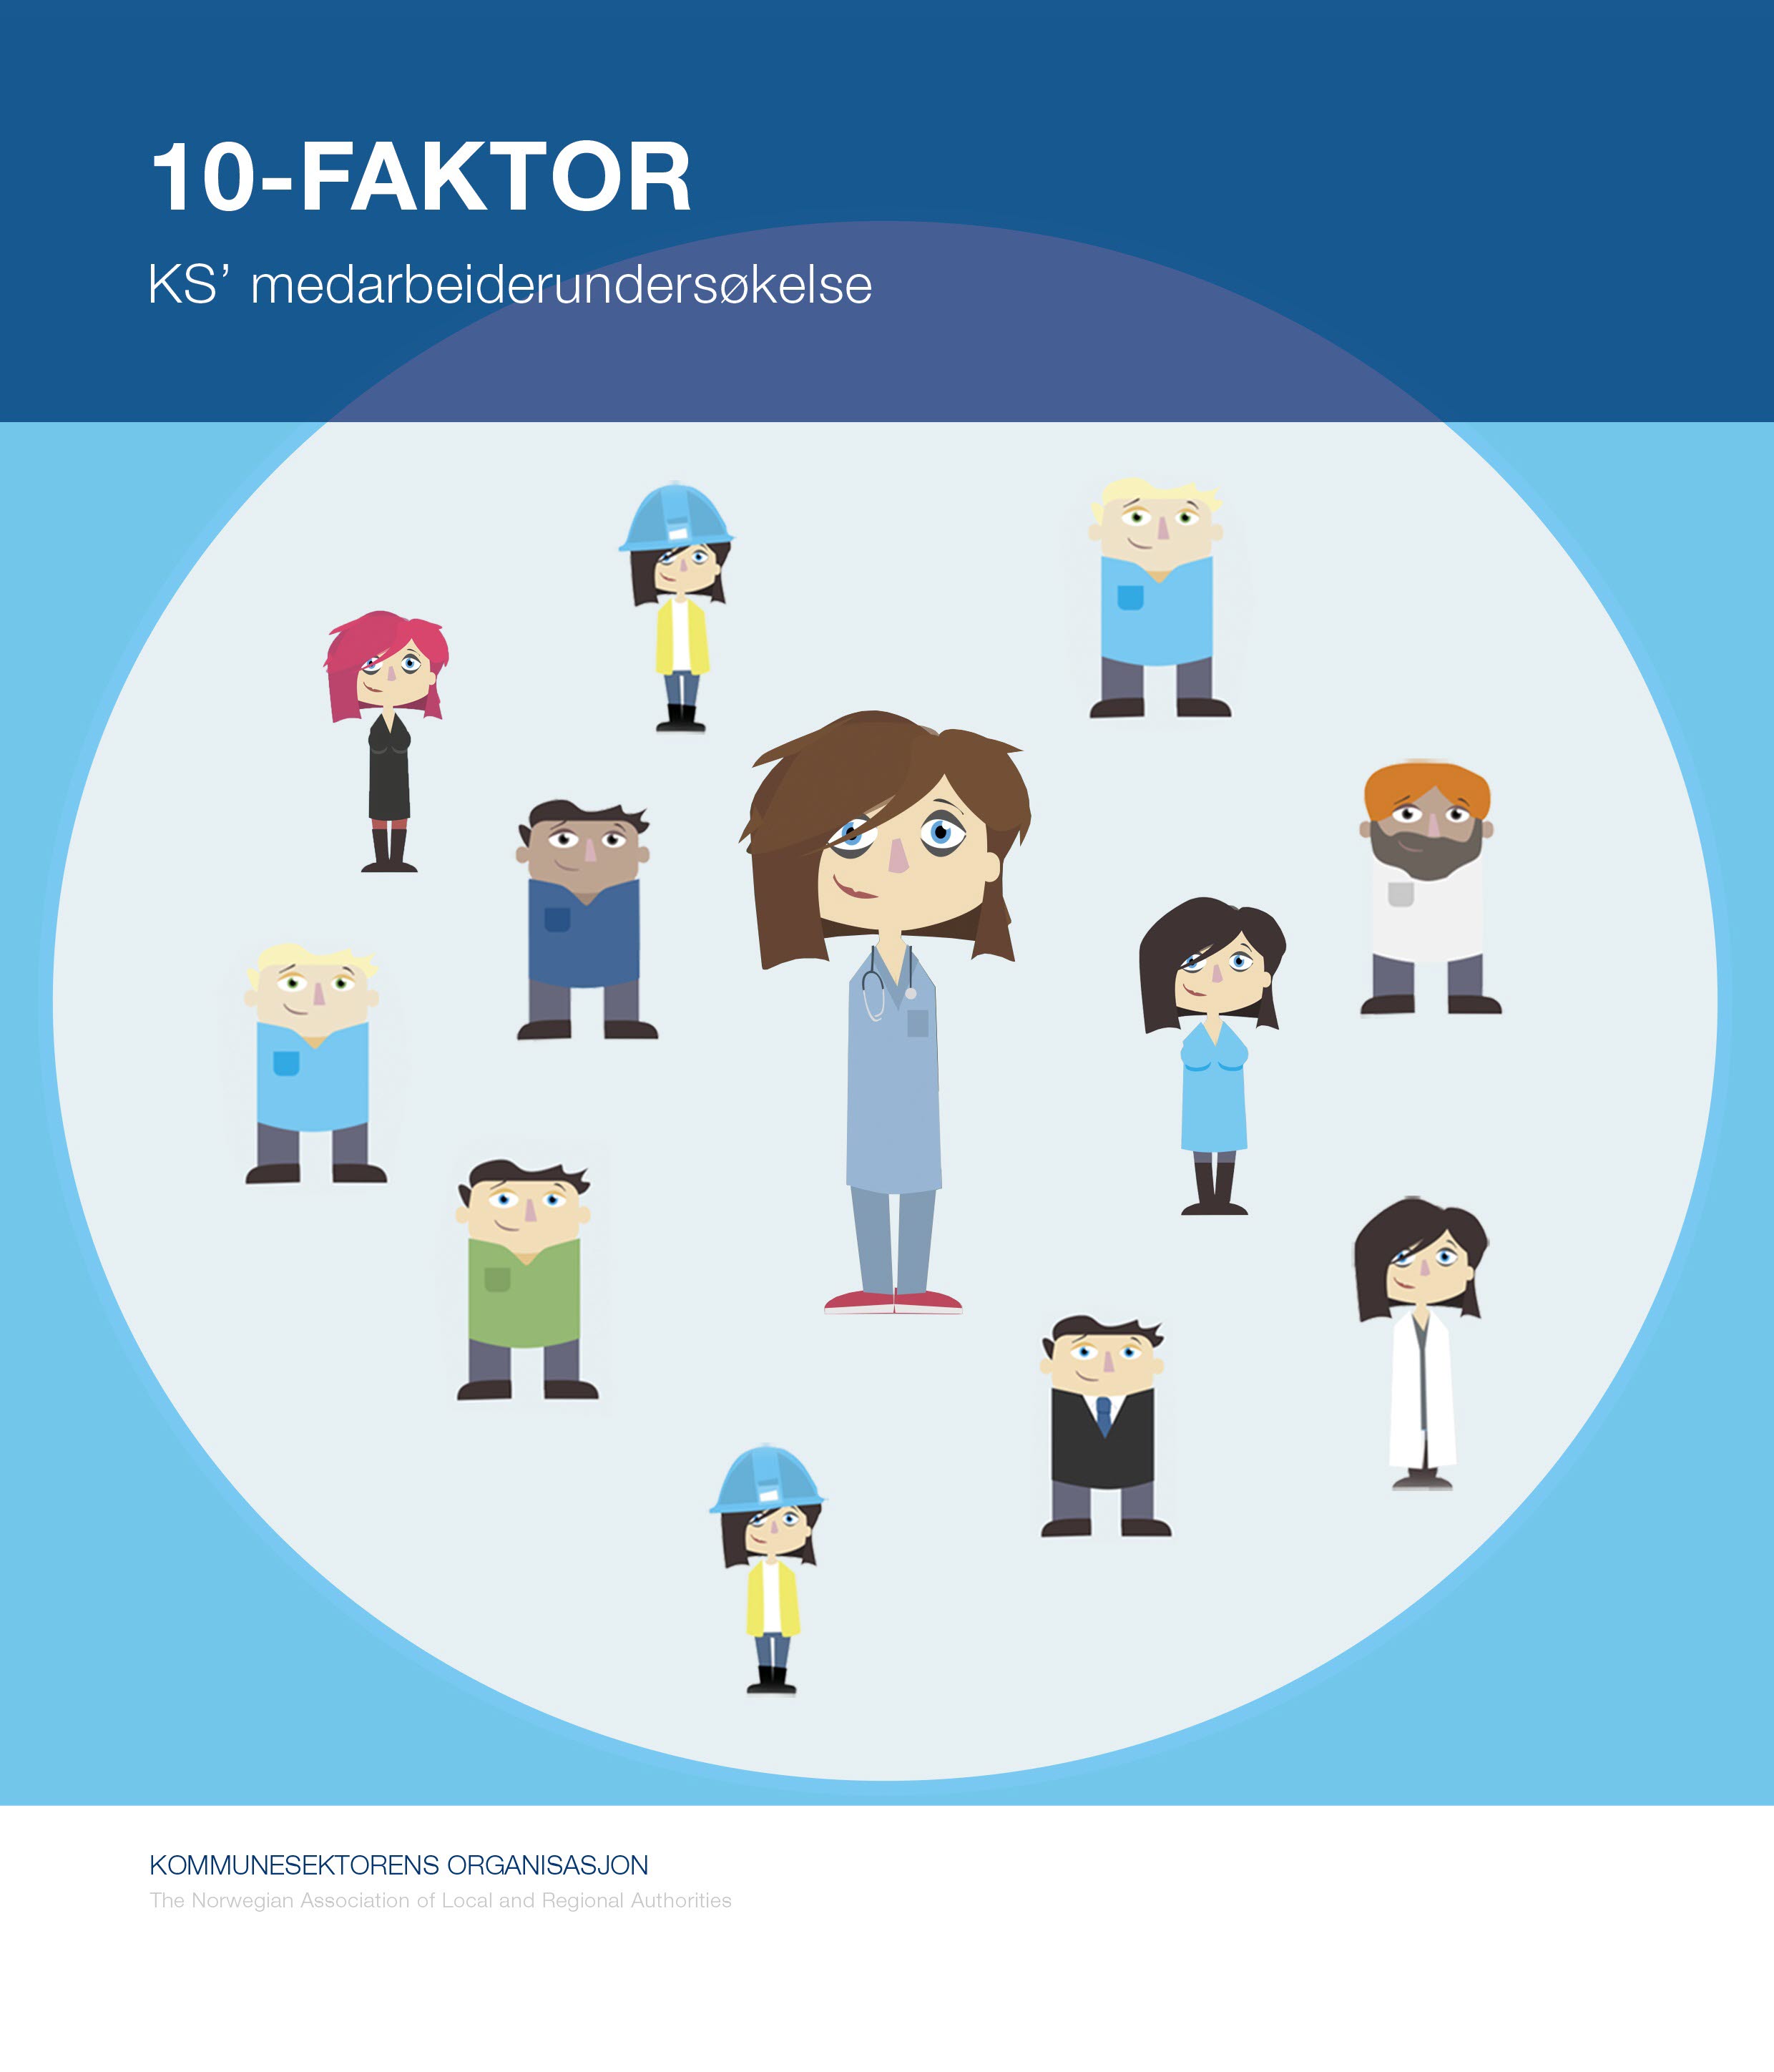 10-FAKTOR - beskrivelse av de ti faktorene